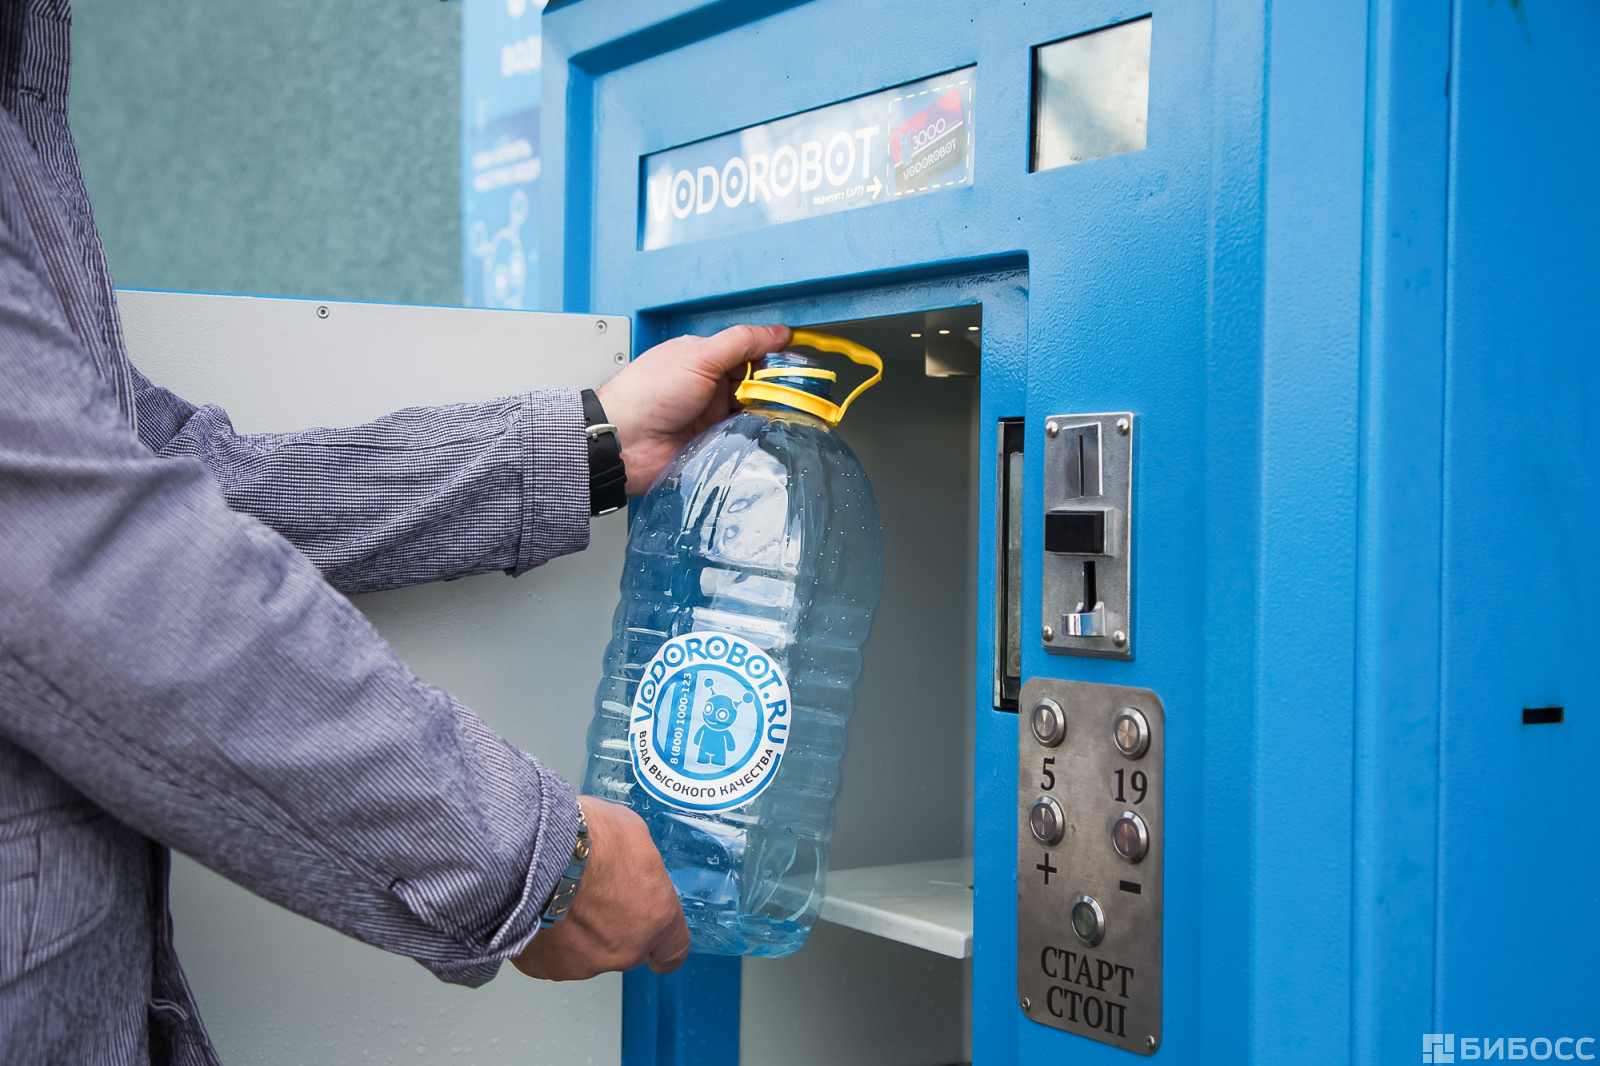 Очищенная вода автомат. Автомат питьевой воды. Автомат с водой. Автомат с бутилированной водой. Водоробот автомат.